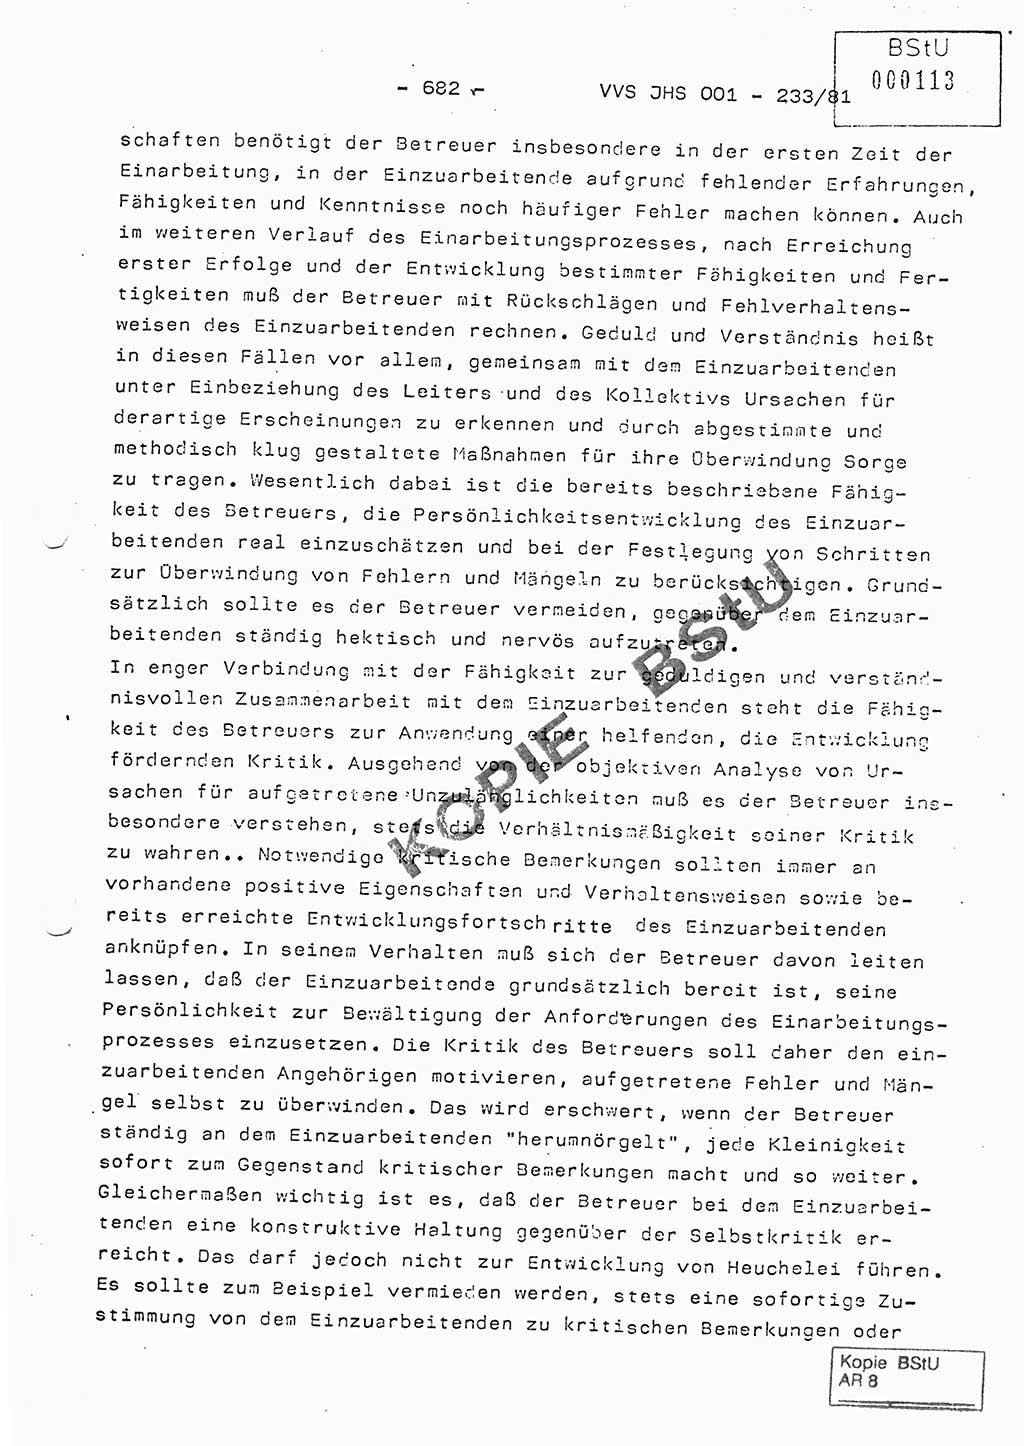 Dissertation Oberstleutnant Horst Zank (JHS), Oberstleutnant Dr. Karl-Heinz Knoblauch (JHS), Oberstleutnant Gustav-Adolf Kowalewski (HA Ⅸ), Oberstleutnant Wolfgang Plötner (HA Ⅸ), Ministerium für Staatssicherheit (MfS) [Deutsche Demokratische Republik (DDR)], Juristische Hochschule (JHS), Vertrauliche Verschlußsache (VVS) o001-233/81, Potsdam 1981, Blatt 682 (Diss. MfS DDR JHS VVS o001-233/81 1981, Bl. 682)